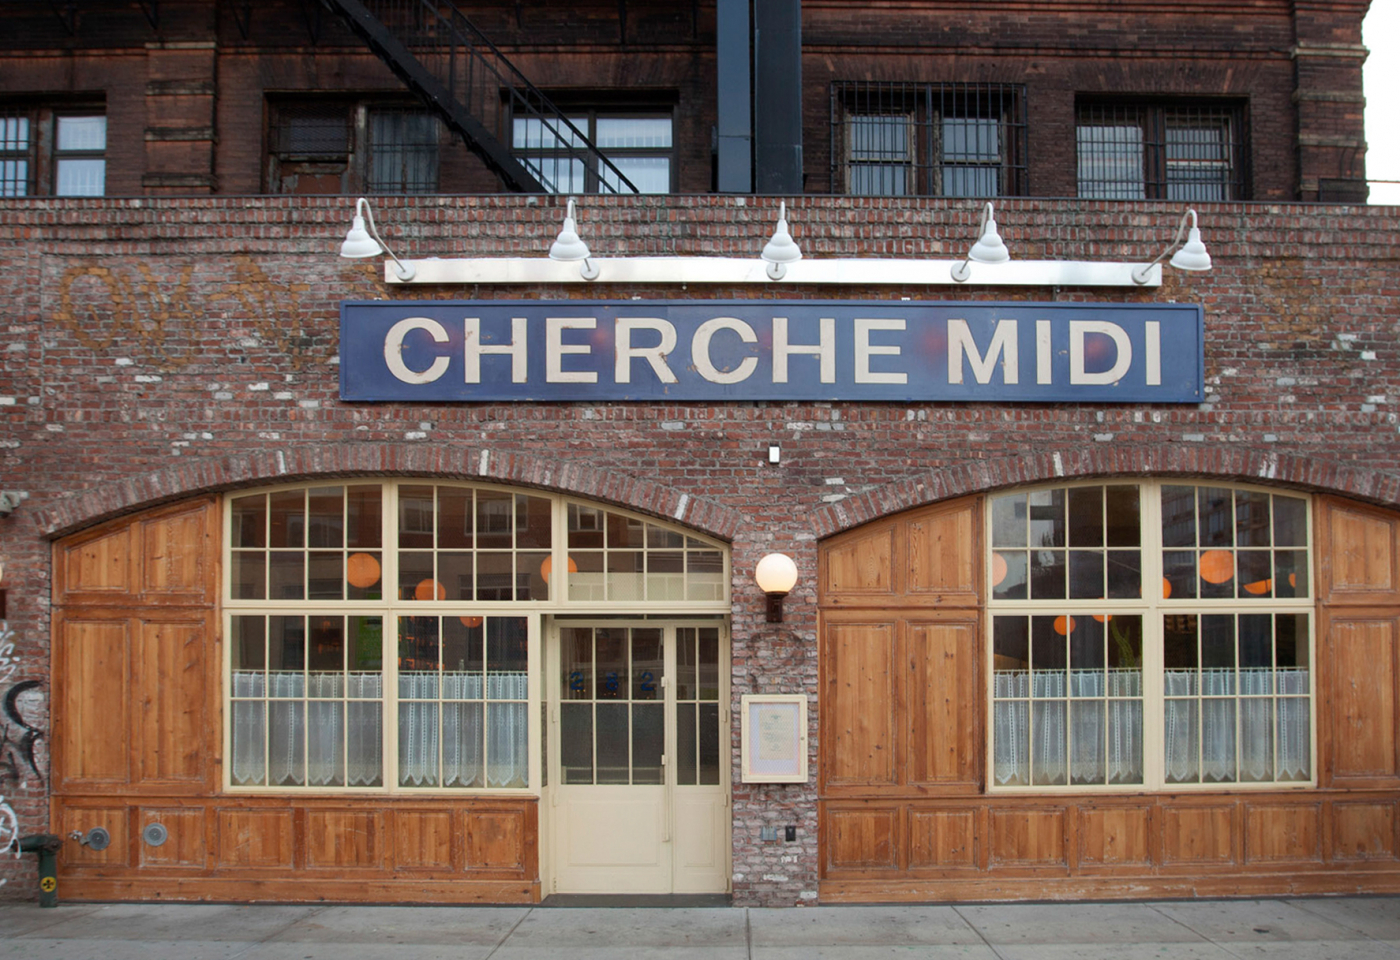 Meet Cherche Midi